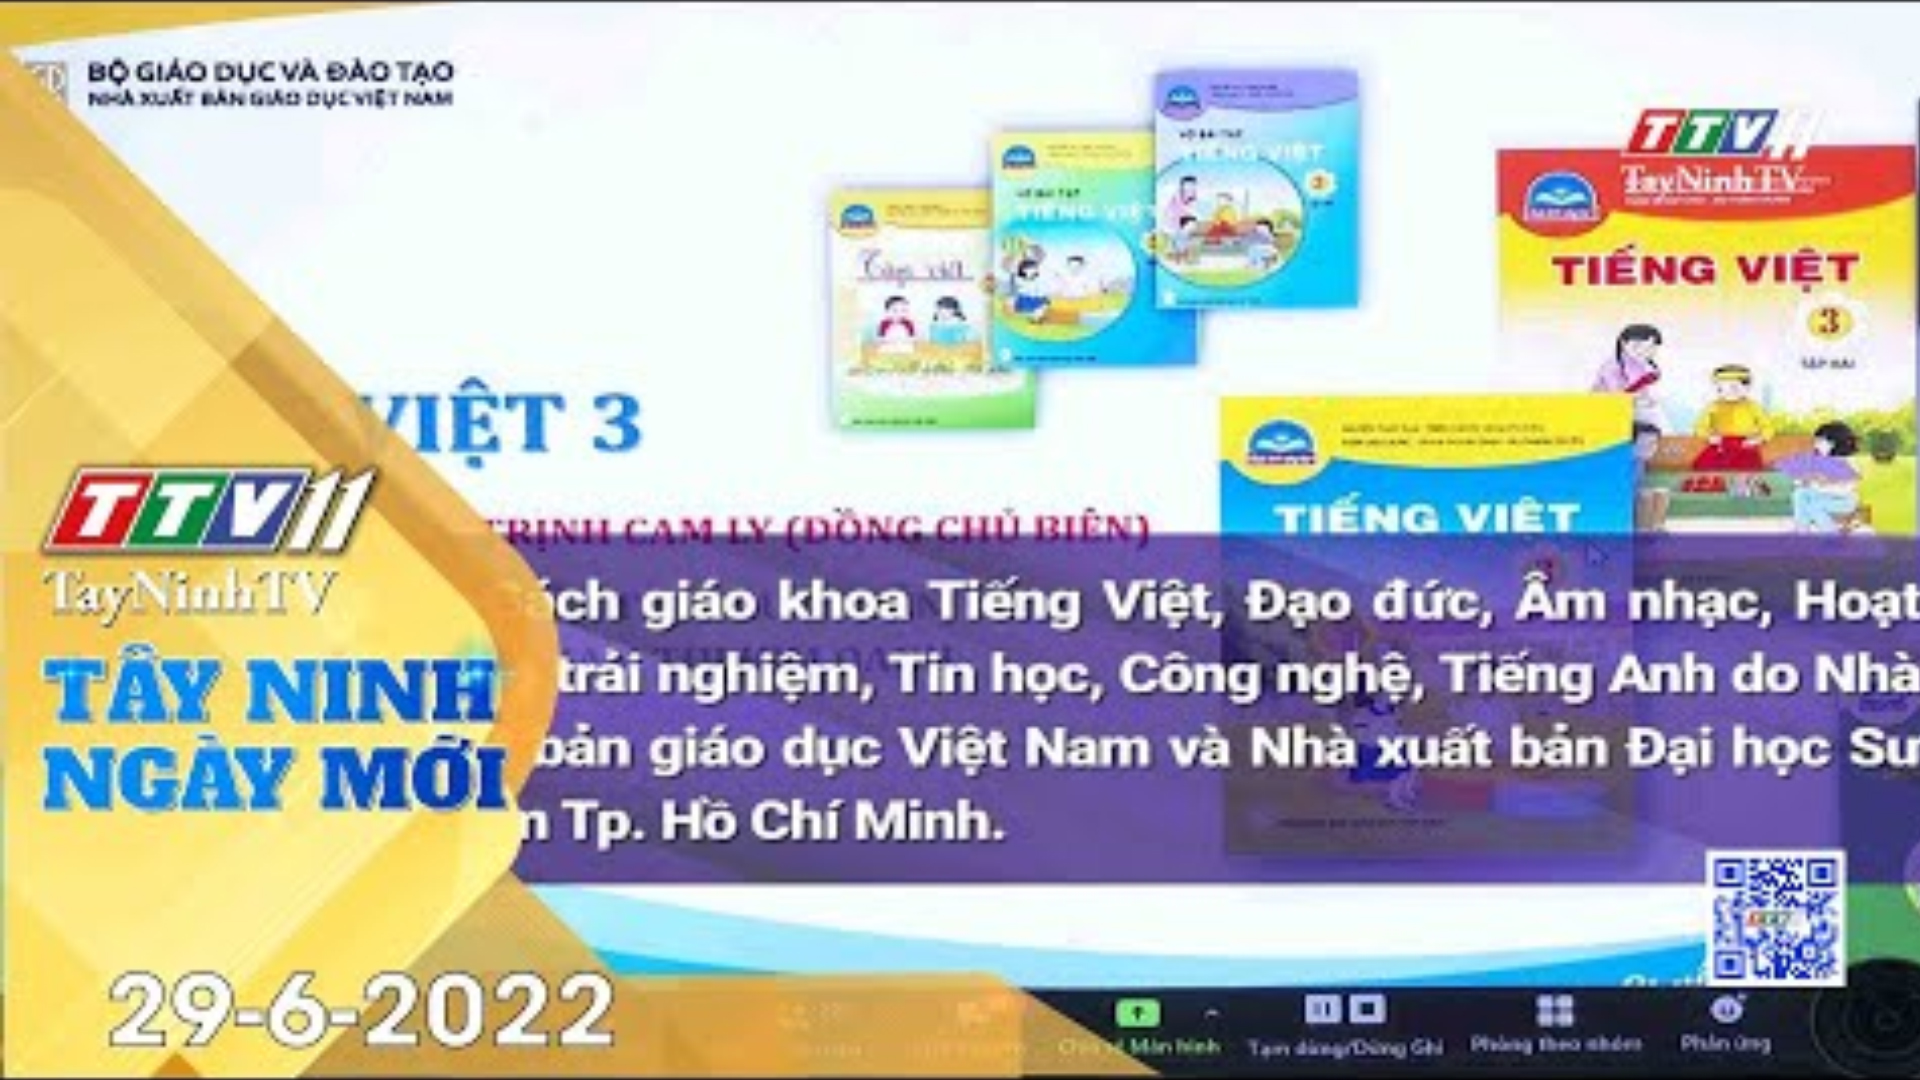 Tây Ninh ngày mới 29-6-2022 | Tin tức hôm nay | TayNinhTV